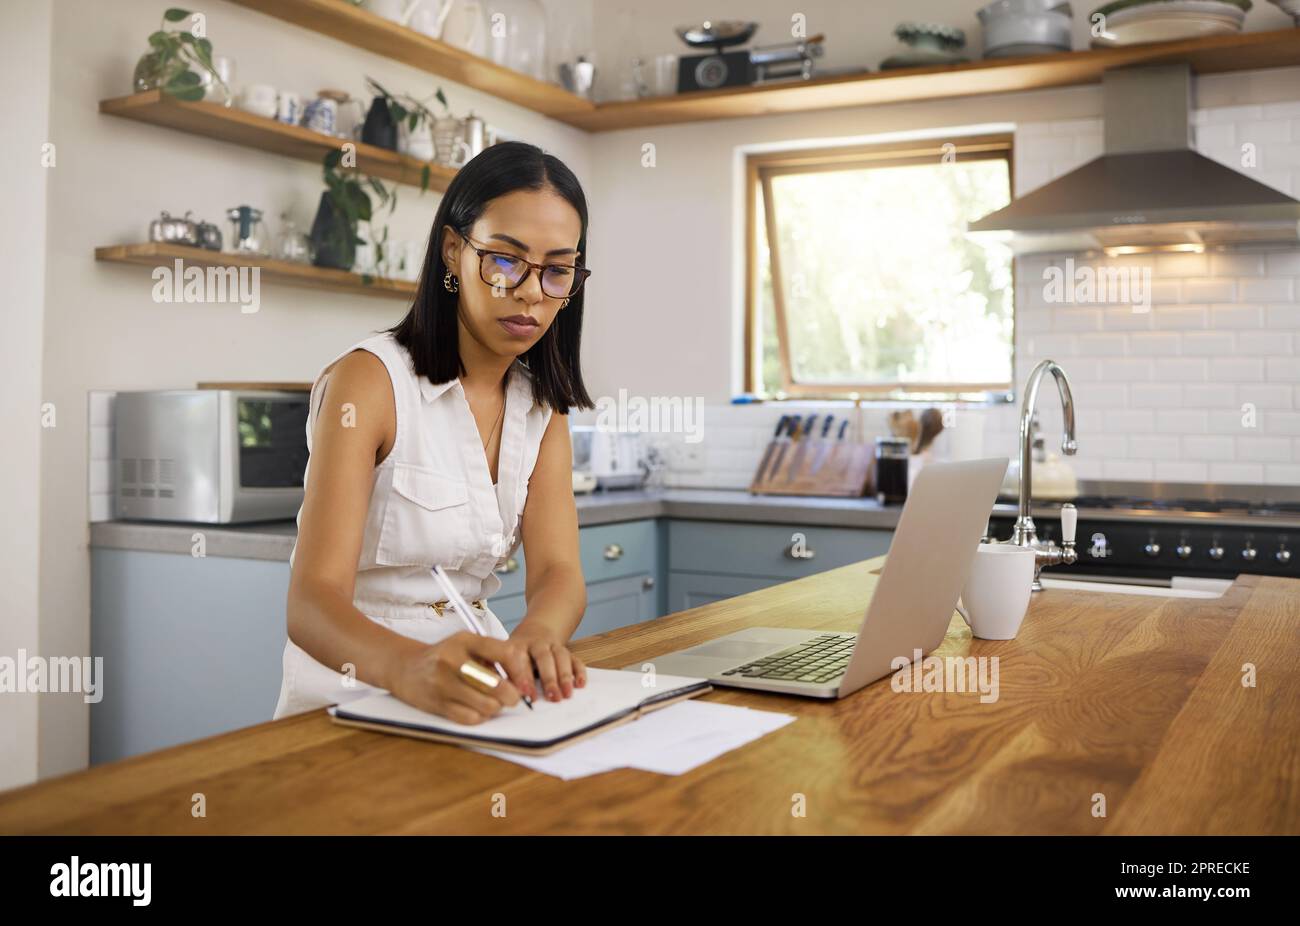 Forschung, Laptop und Frau schreiben in der Küche für Remote-Arbeit mit Notebook, Internet und Networking am Morgen online. Innovation, Management und Stockfoto